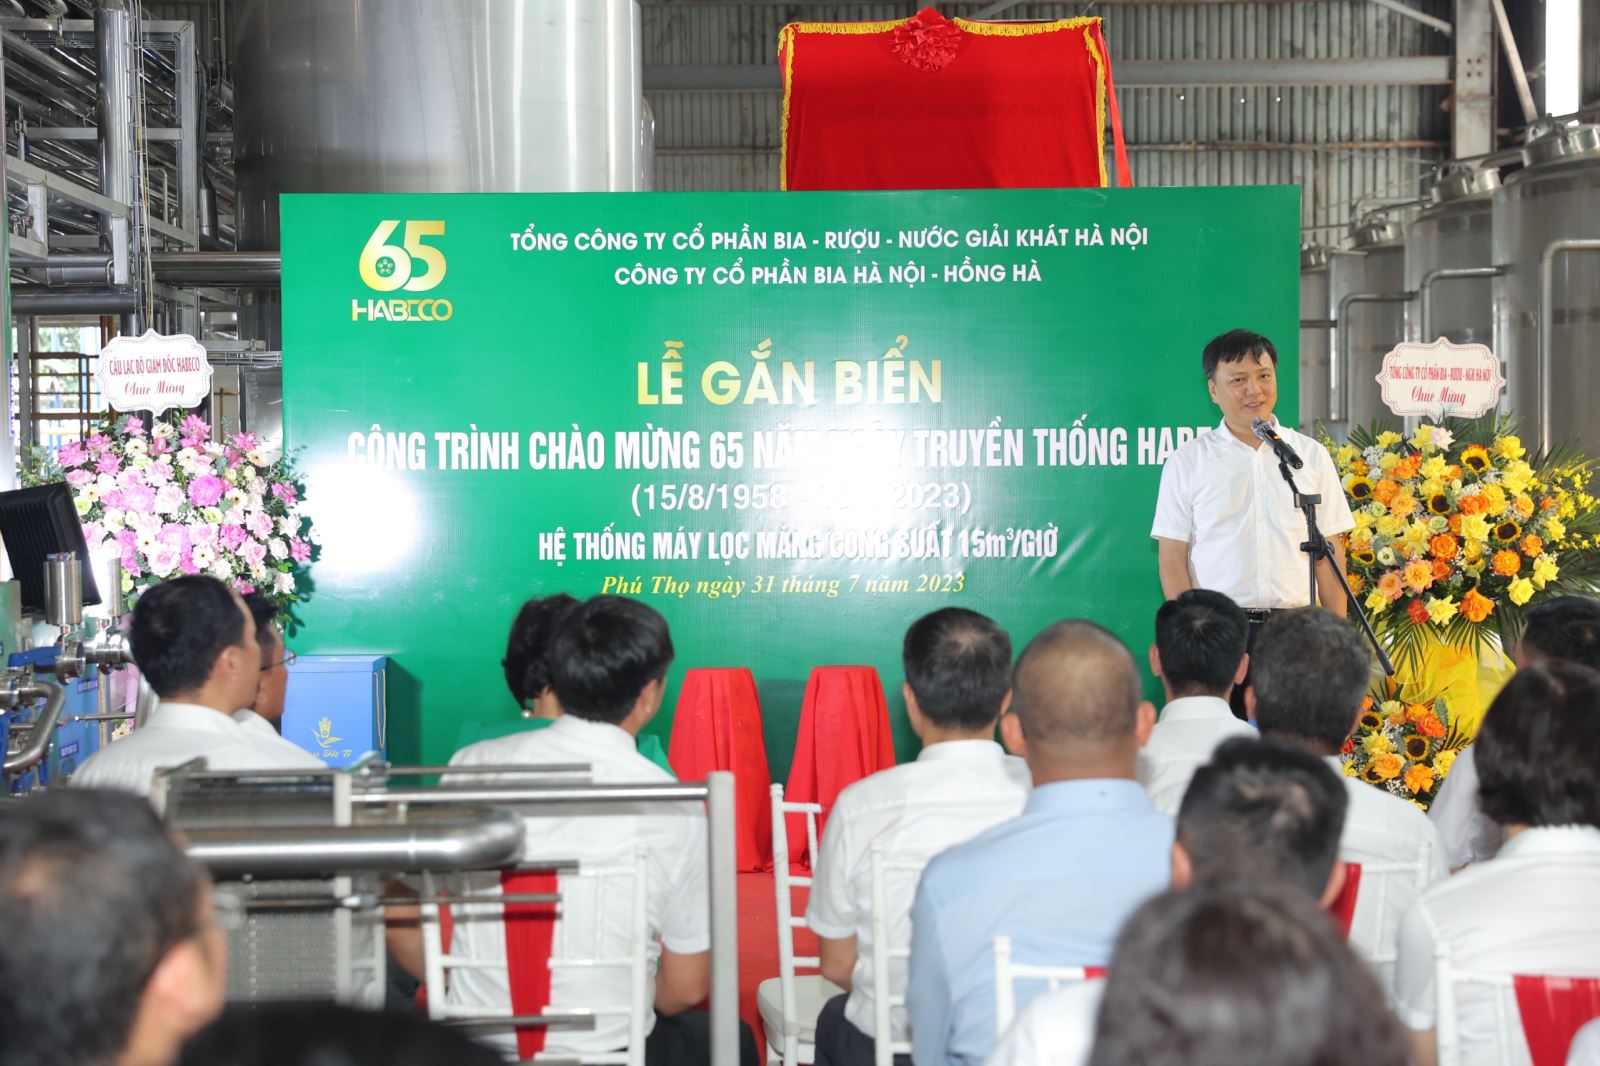 Công ty CP Bia Hà Nội – Hồng Hà tổ chức Lễ gắn biển Công trình Hệ thống máy lọc màng, chào mừng 65 năm ngày truyền thống HABECO